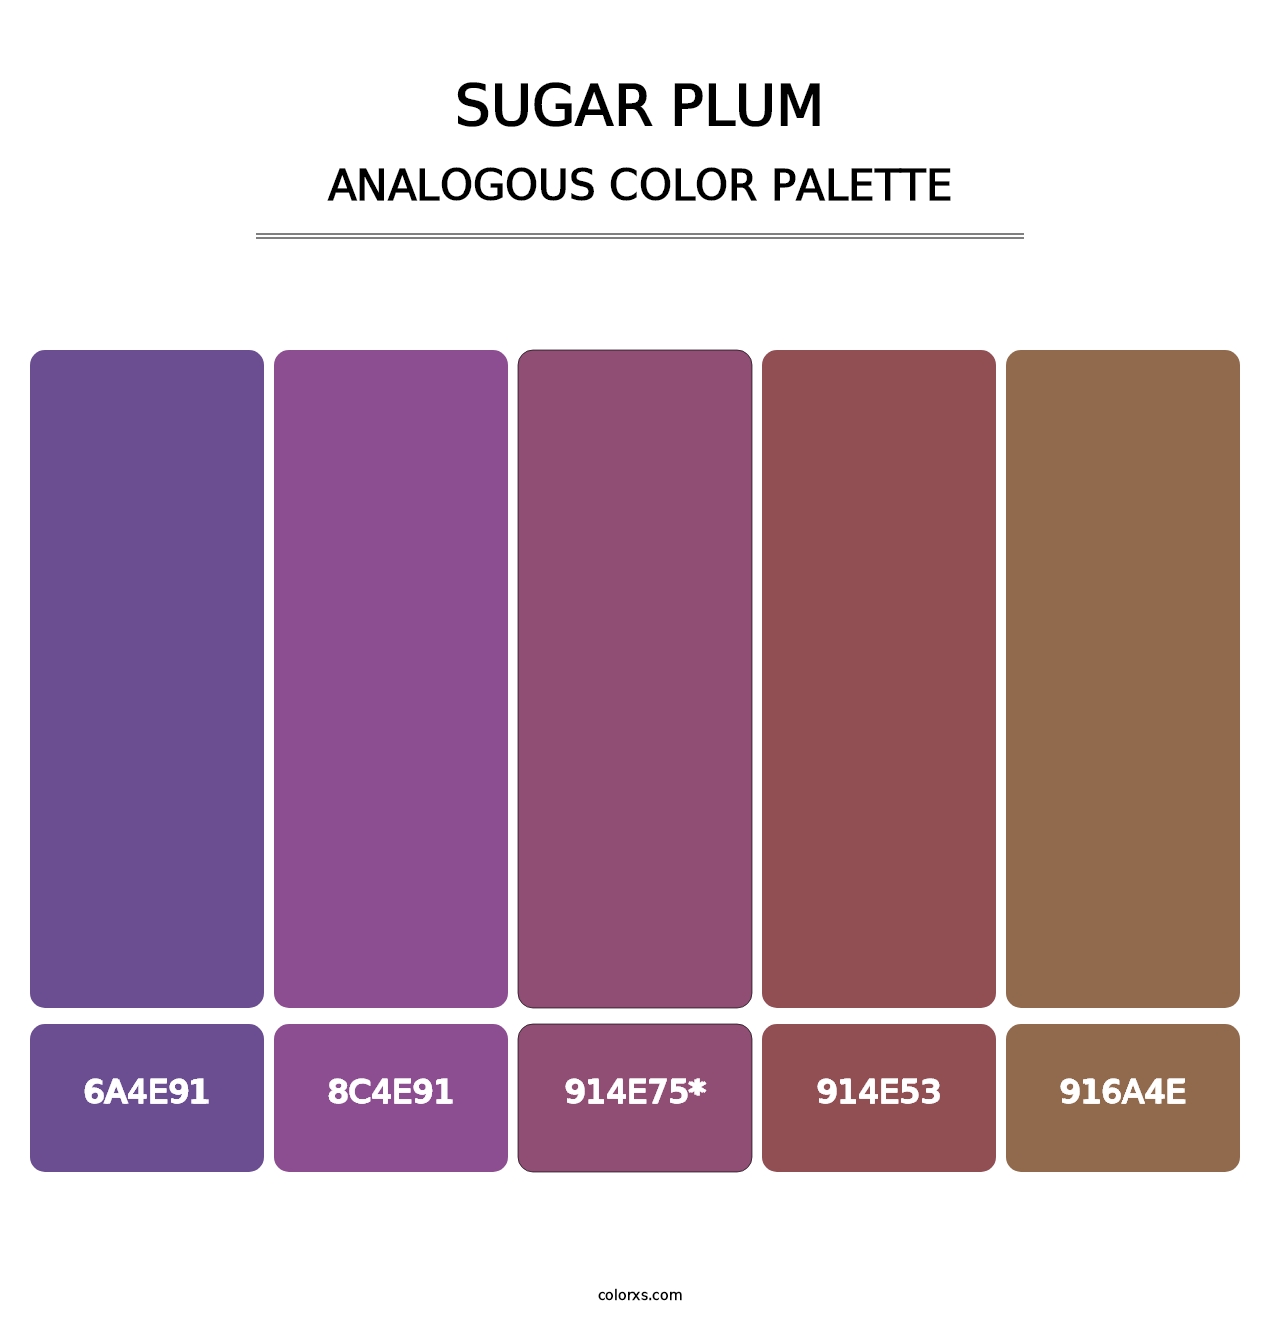 Sugar Plum - Analogous Color Palette